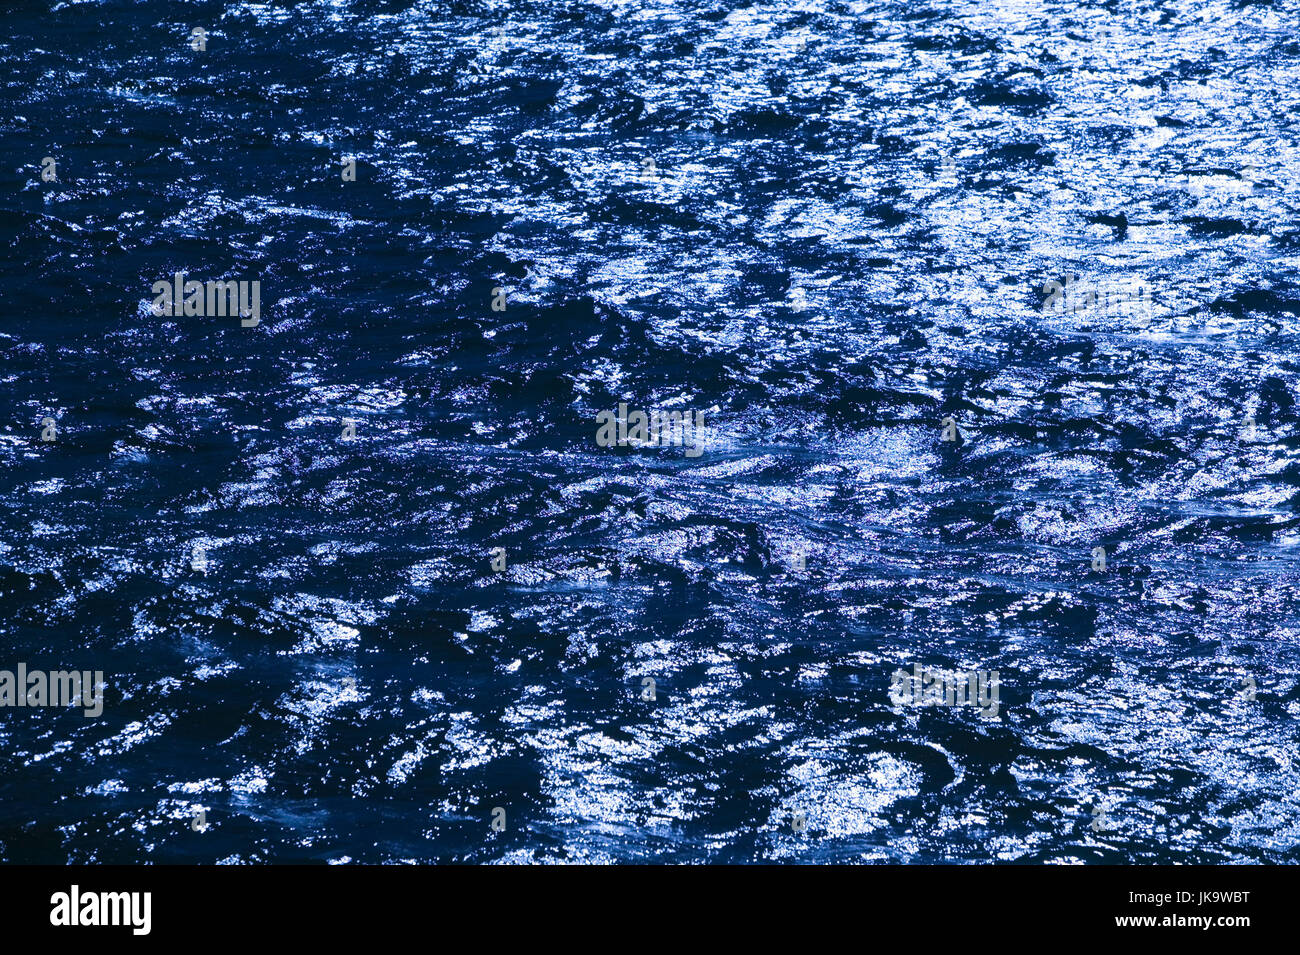 Meer, Wellen, Detail,    Ozean, Wasser, Wasseroberfläche, unruhig, bewegt, wellig, Bewegung, Natur, Naturgewalt, Struktur, Background, Farbstimmung, Farbe blau, Stock Photo